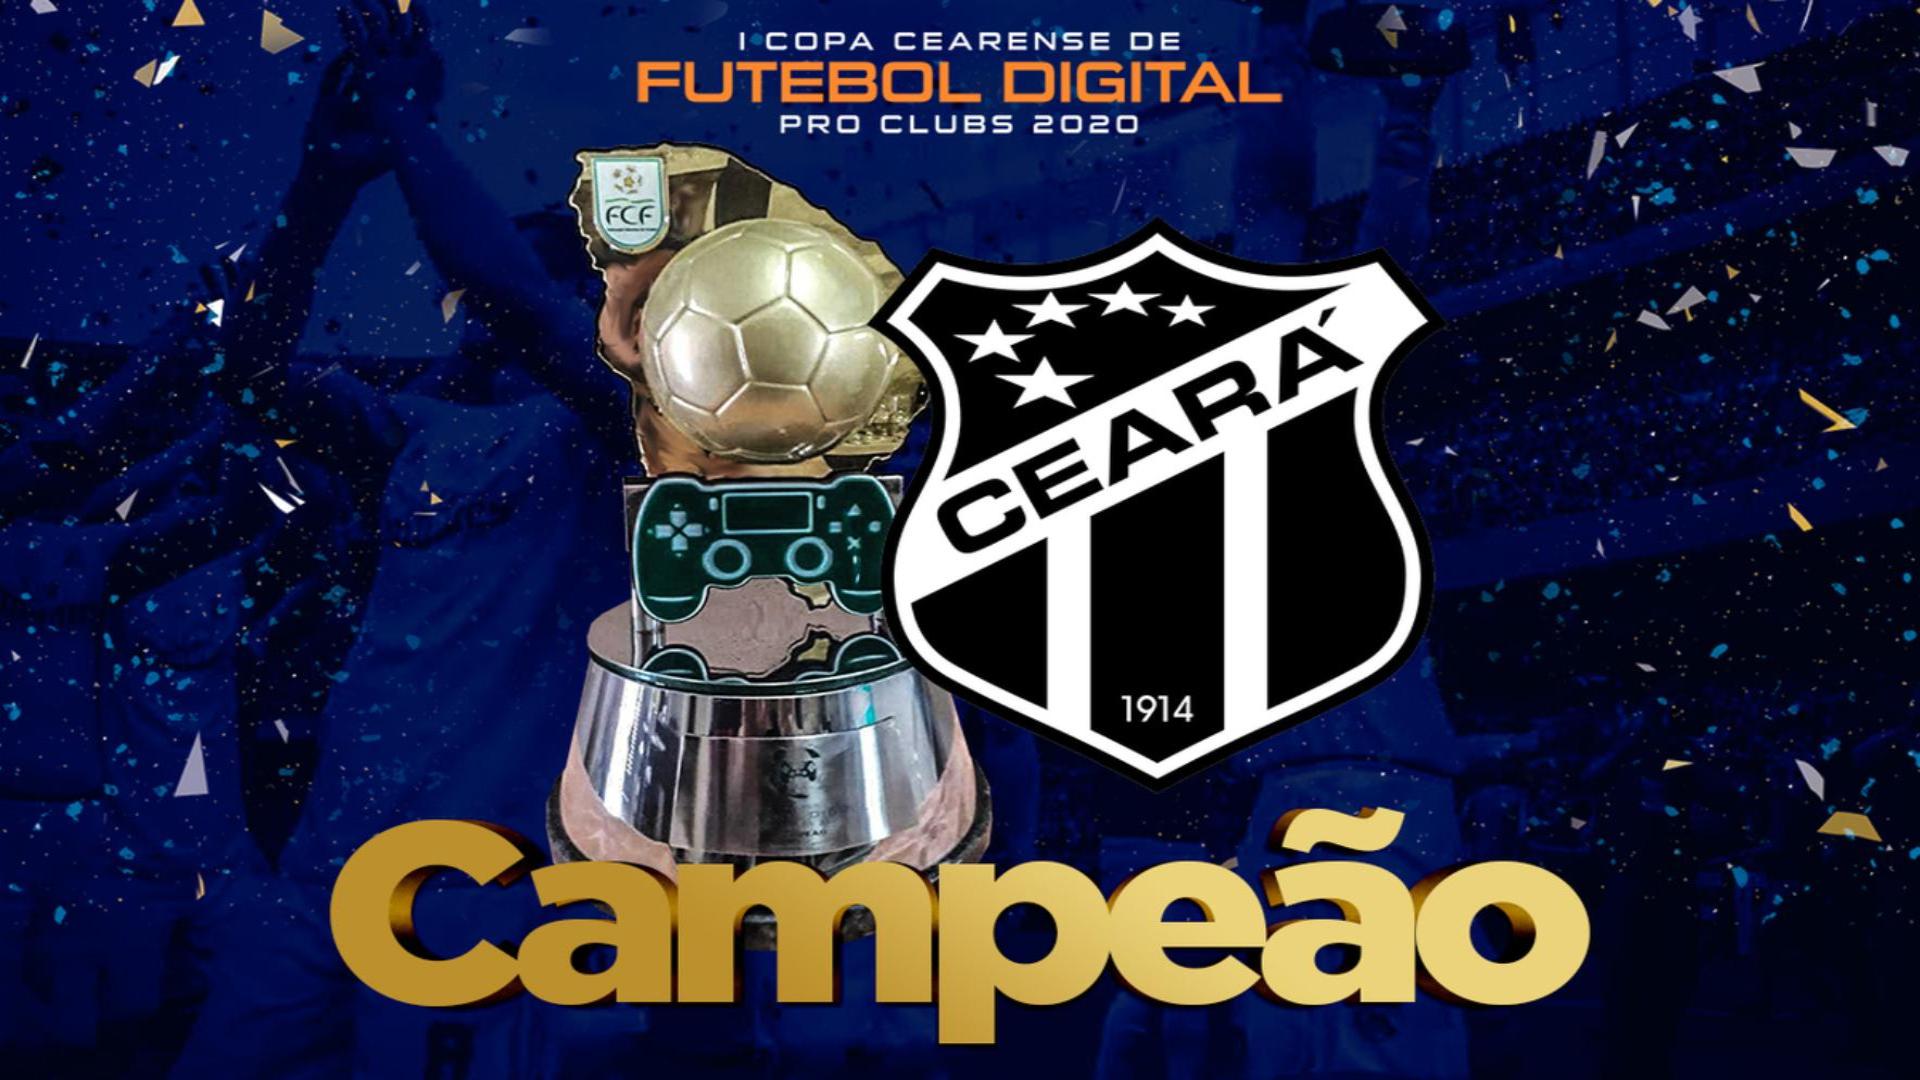 Ceará goleia Fortaleza na final e é o campeão da 1ª Copa Cearense de Futebol Digital Pro Clubs.